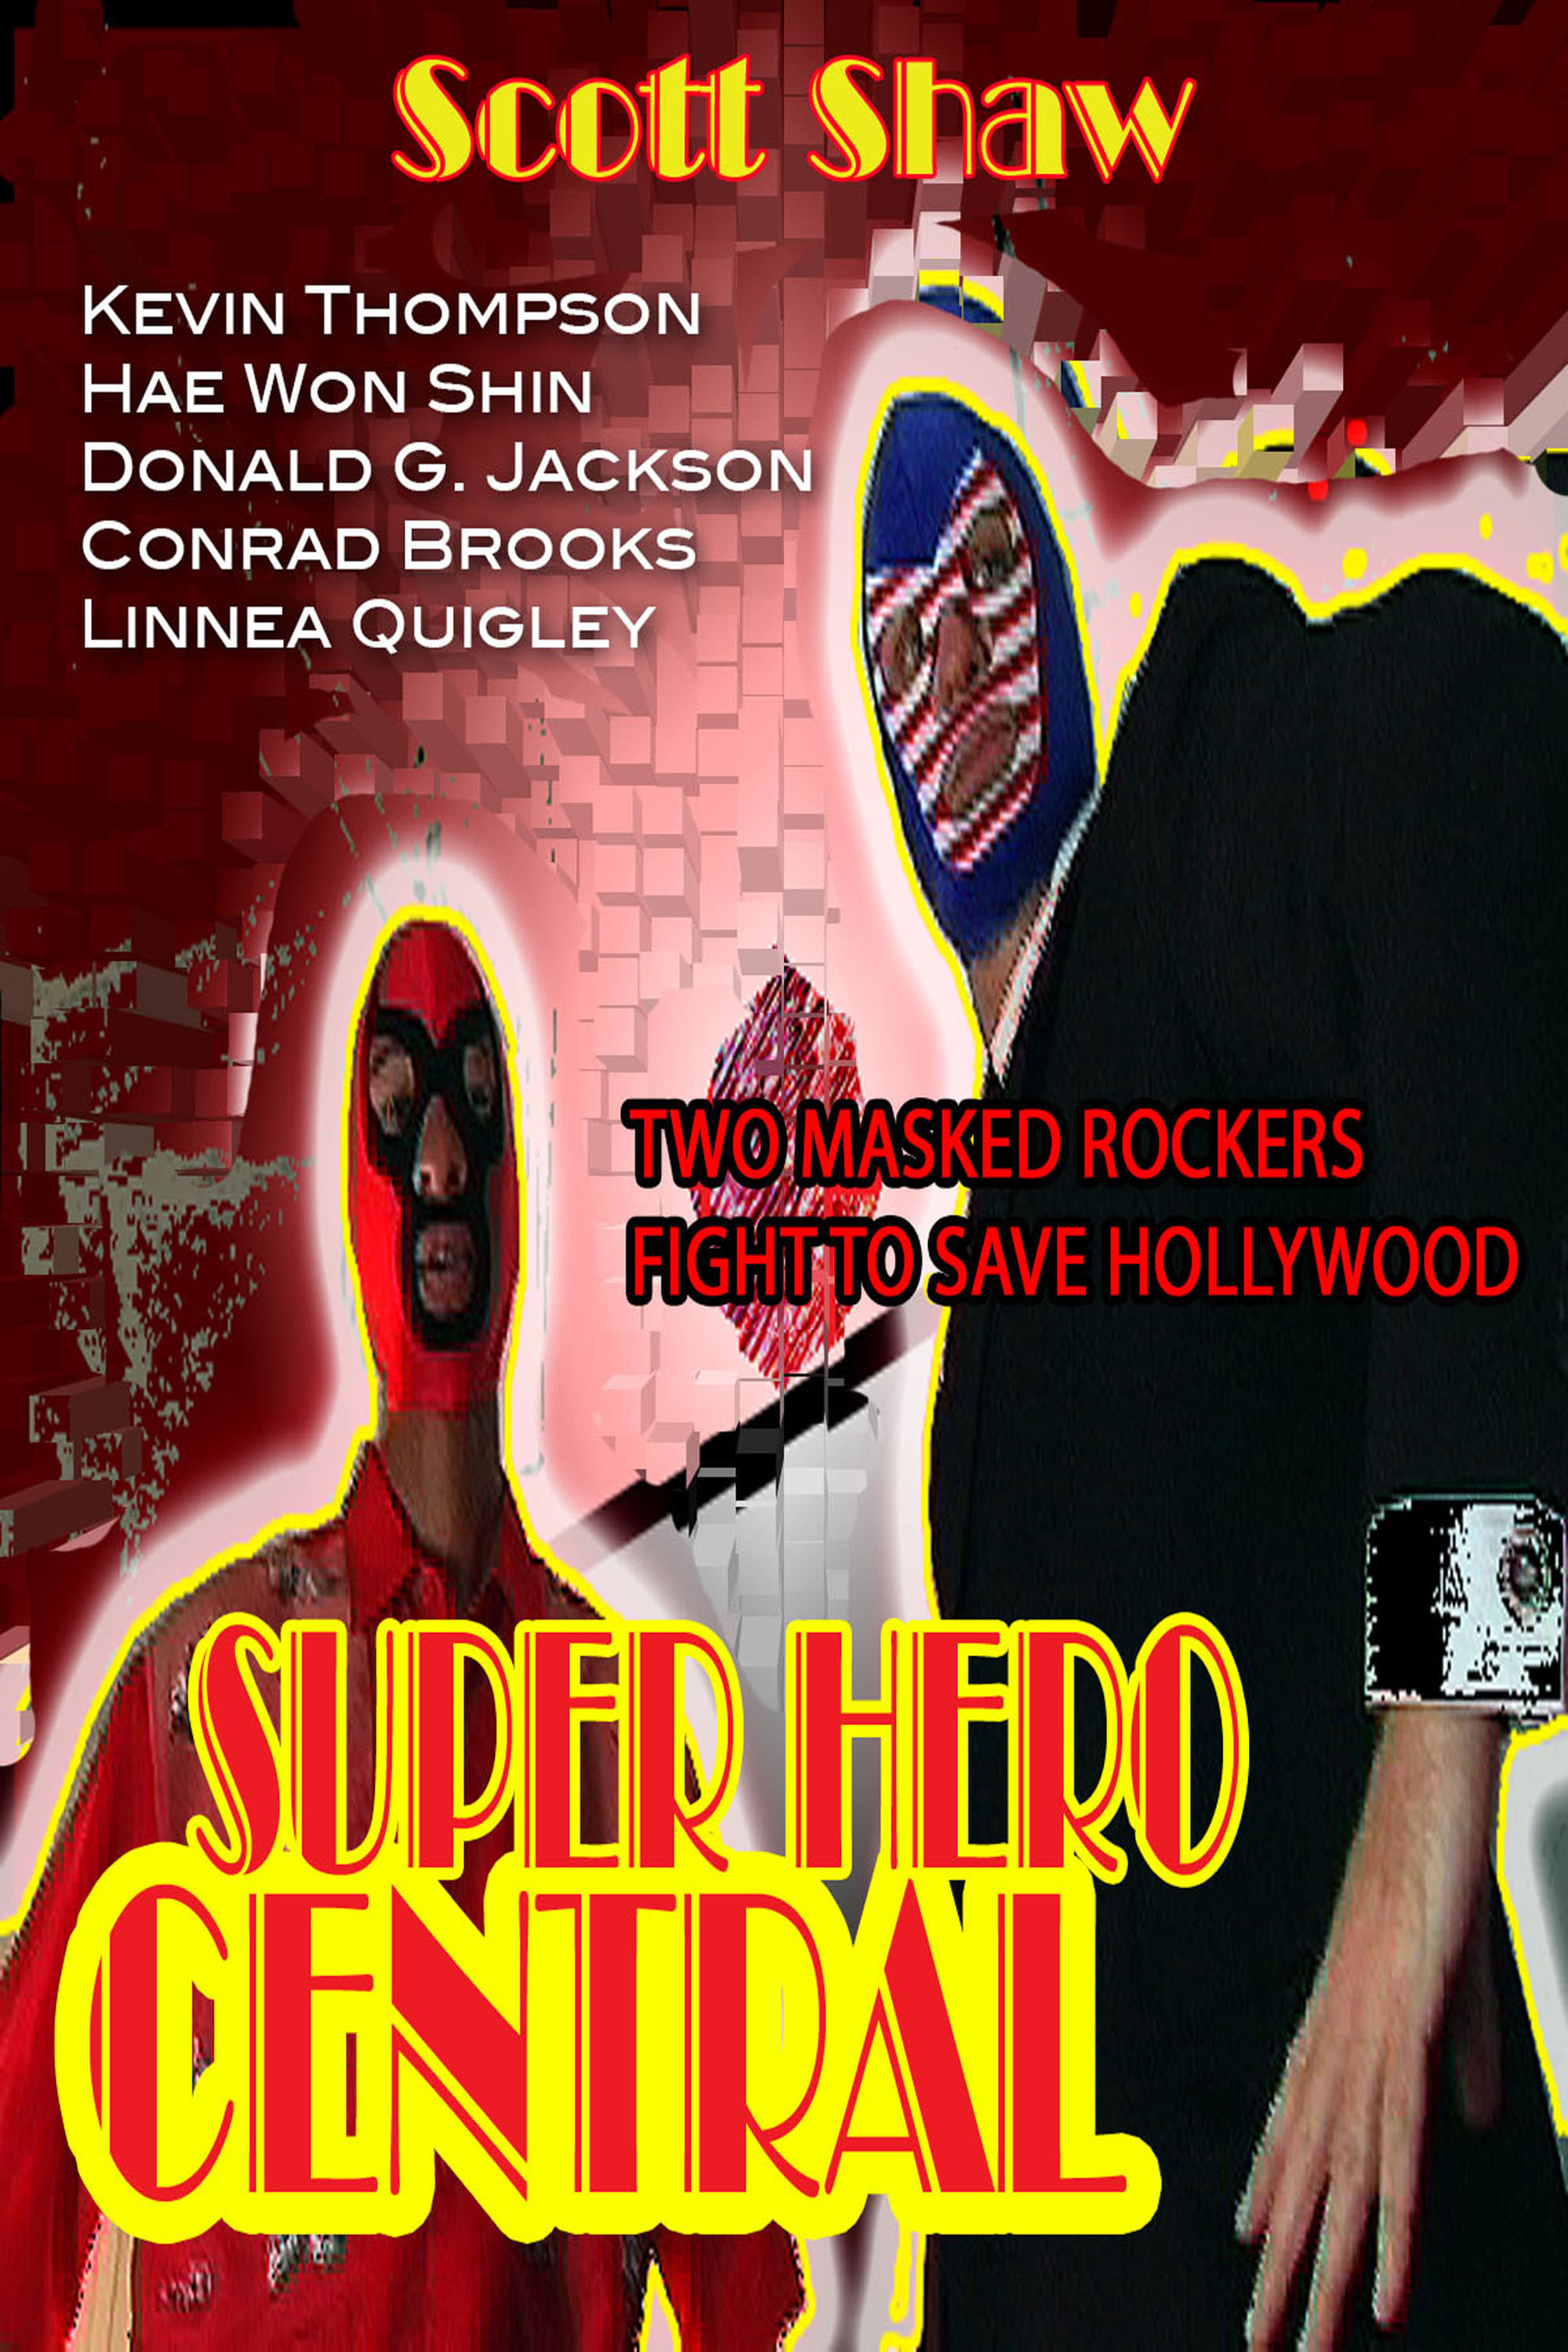 Super Hero Central (2004)